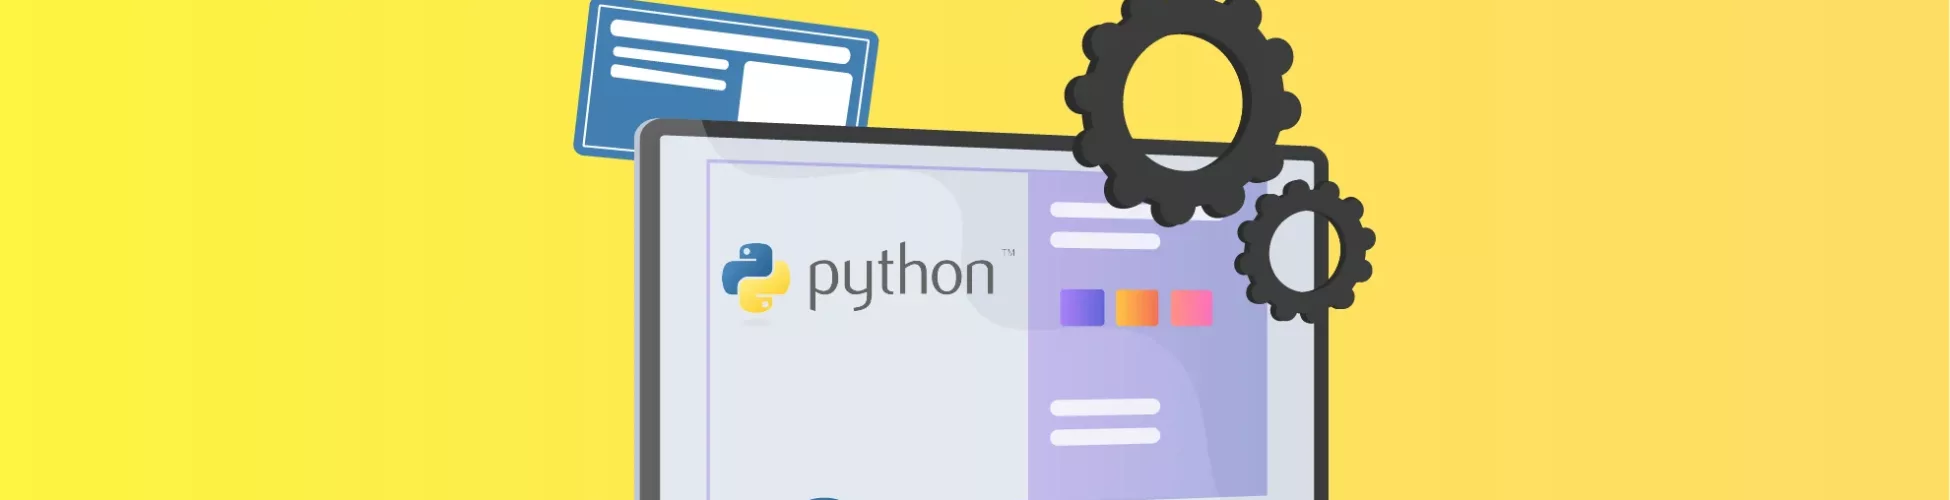 python development companies - Prometteur Solutions